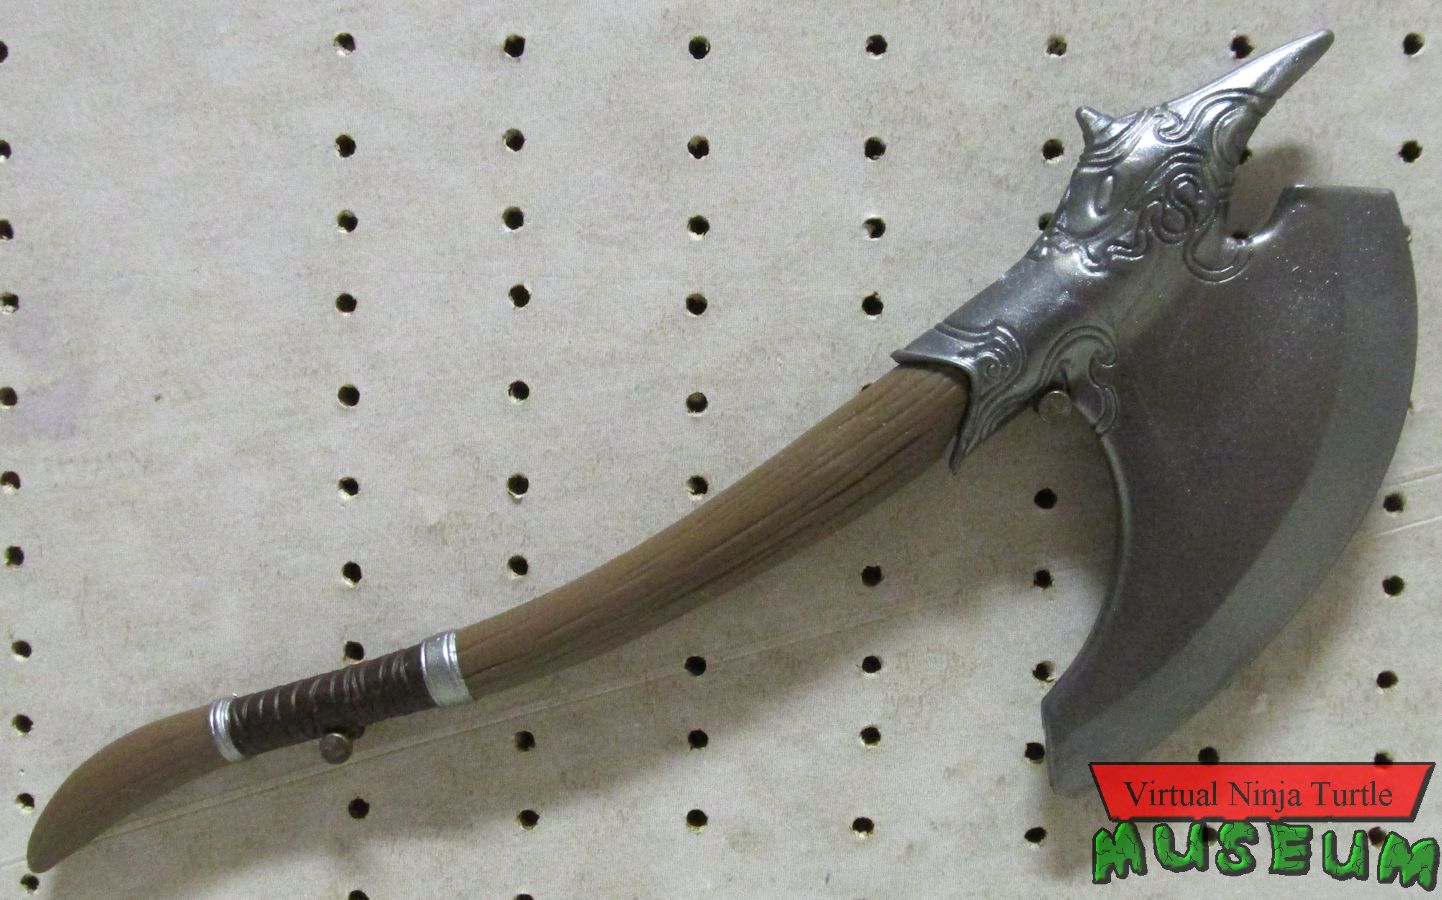 Odinson's axe